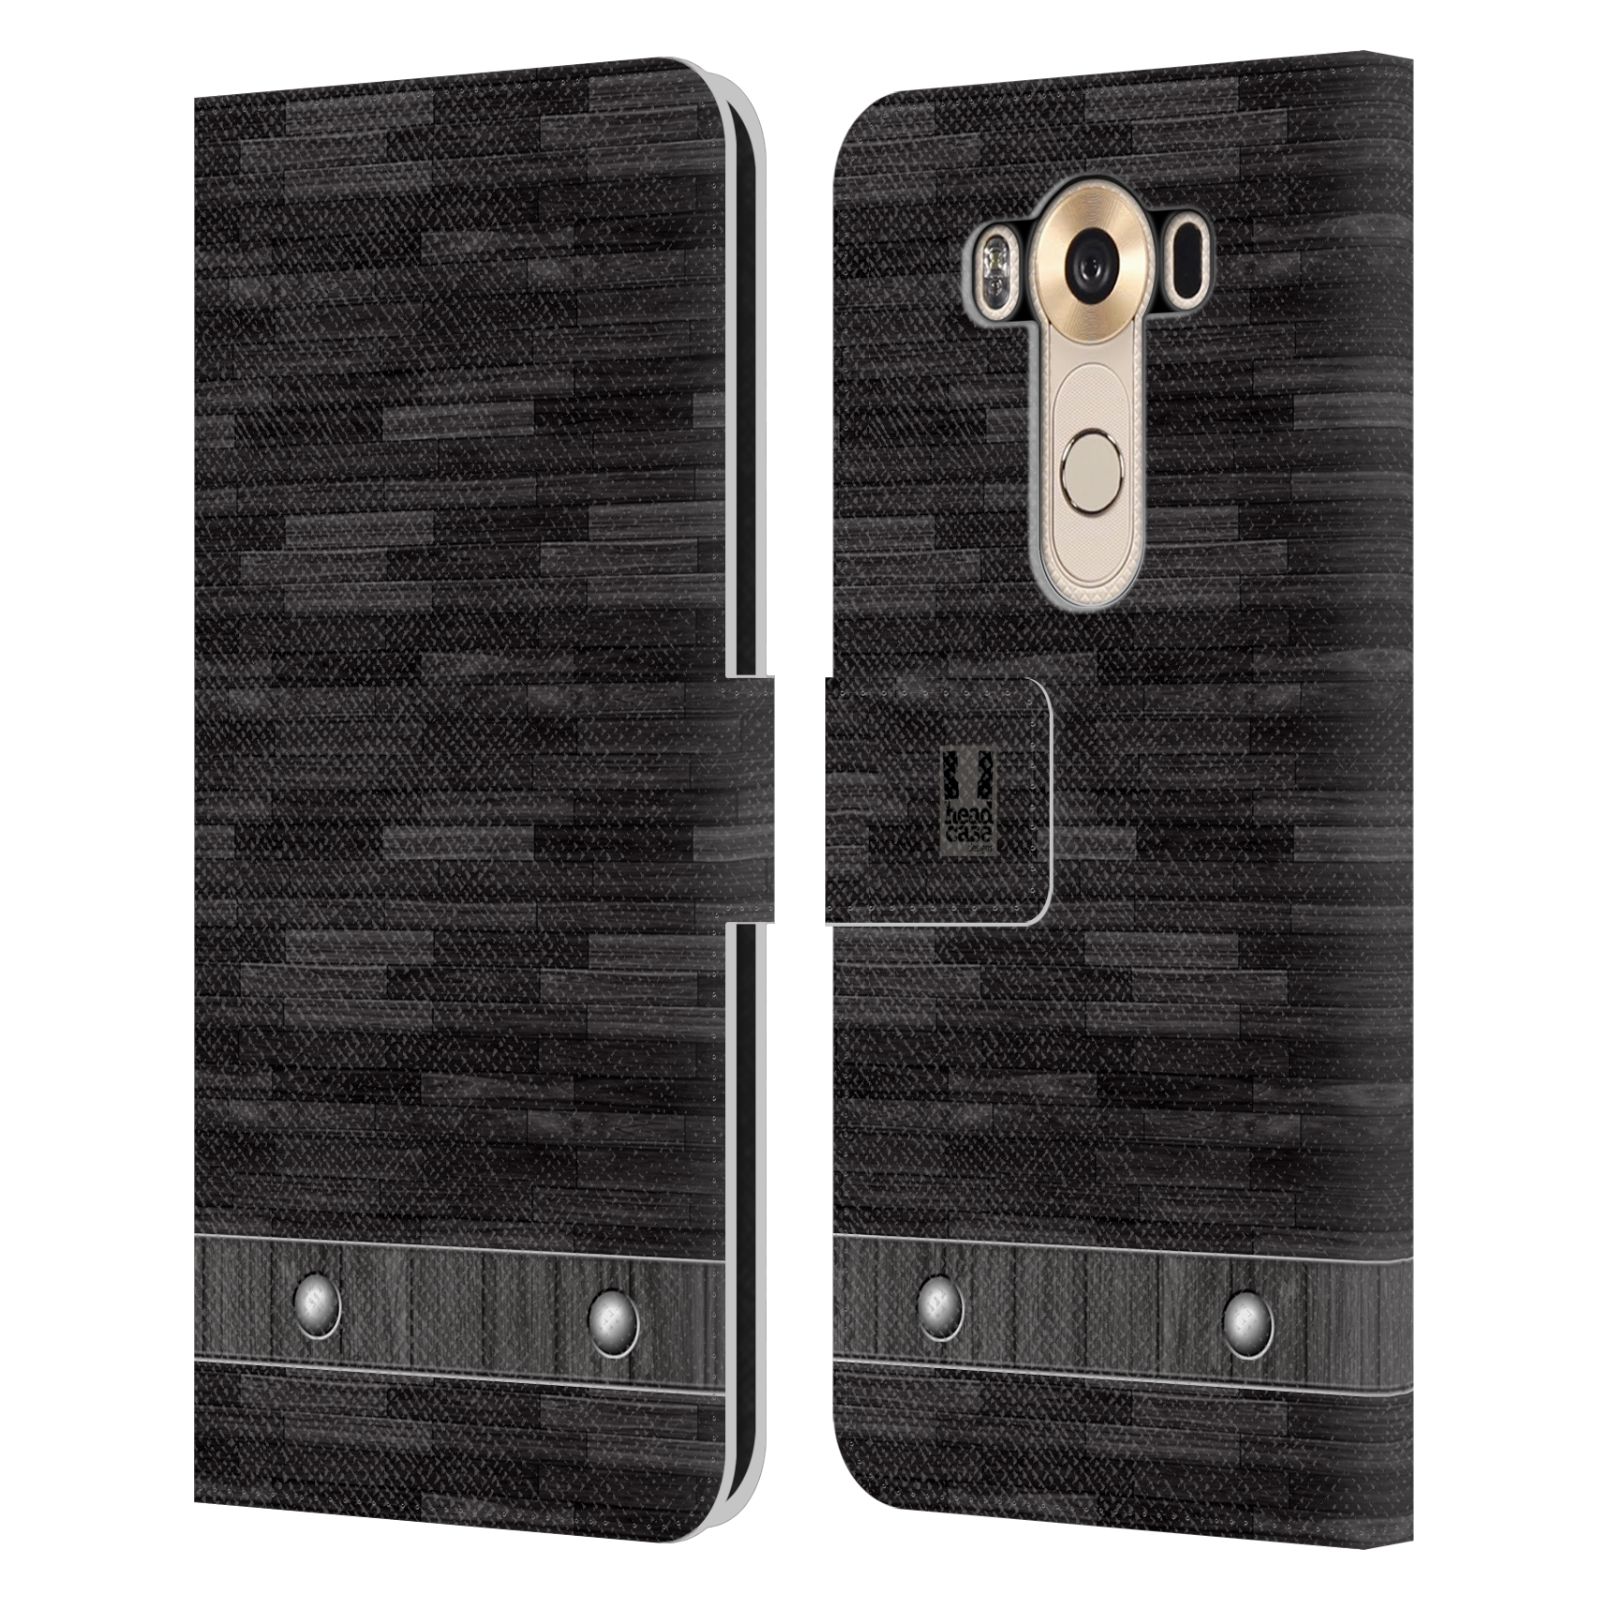 HEAD CASE Flipové pouzdro pro mobil LG V10 stavební textury dřevo černá barva